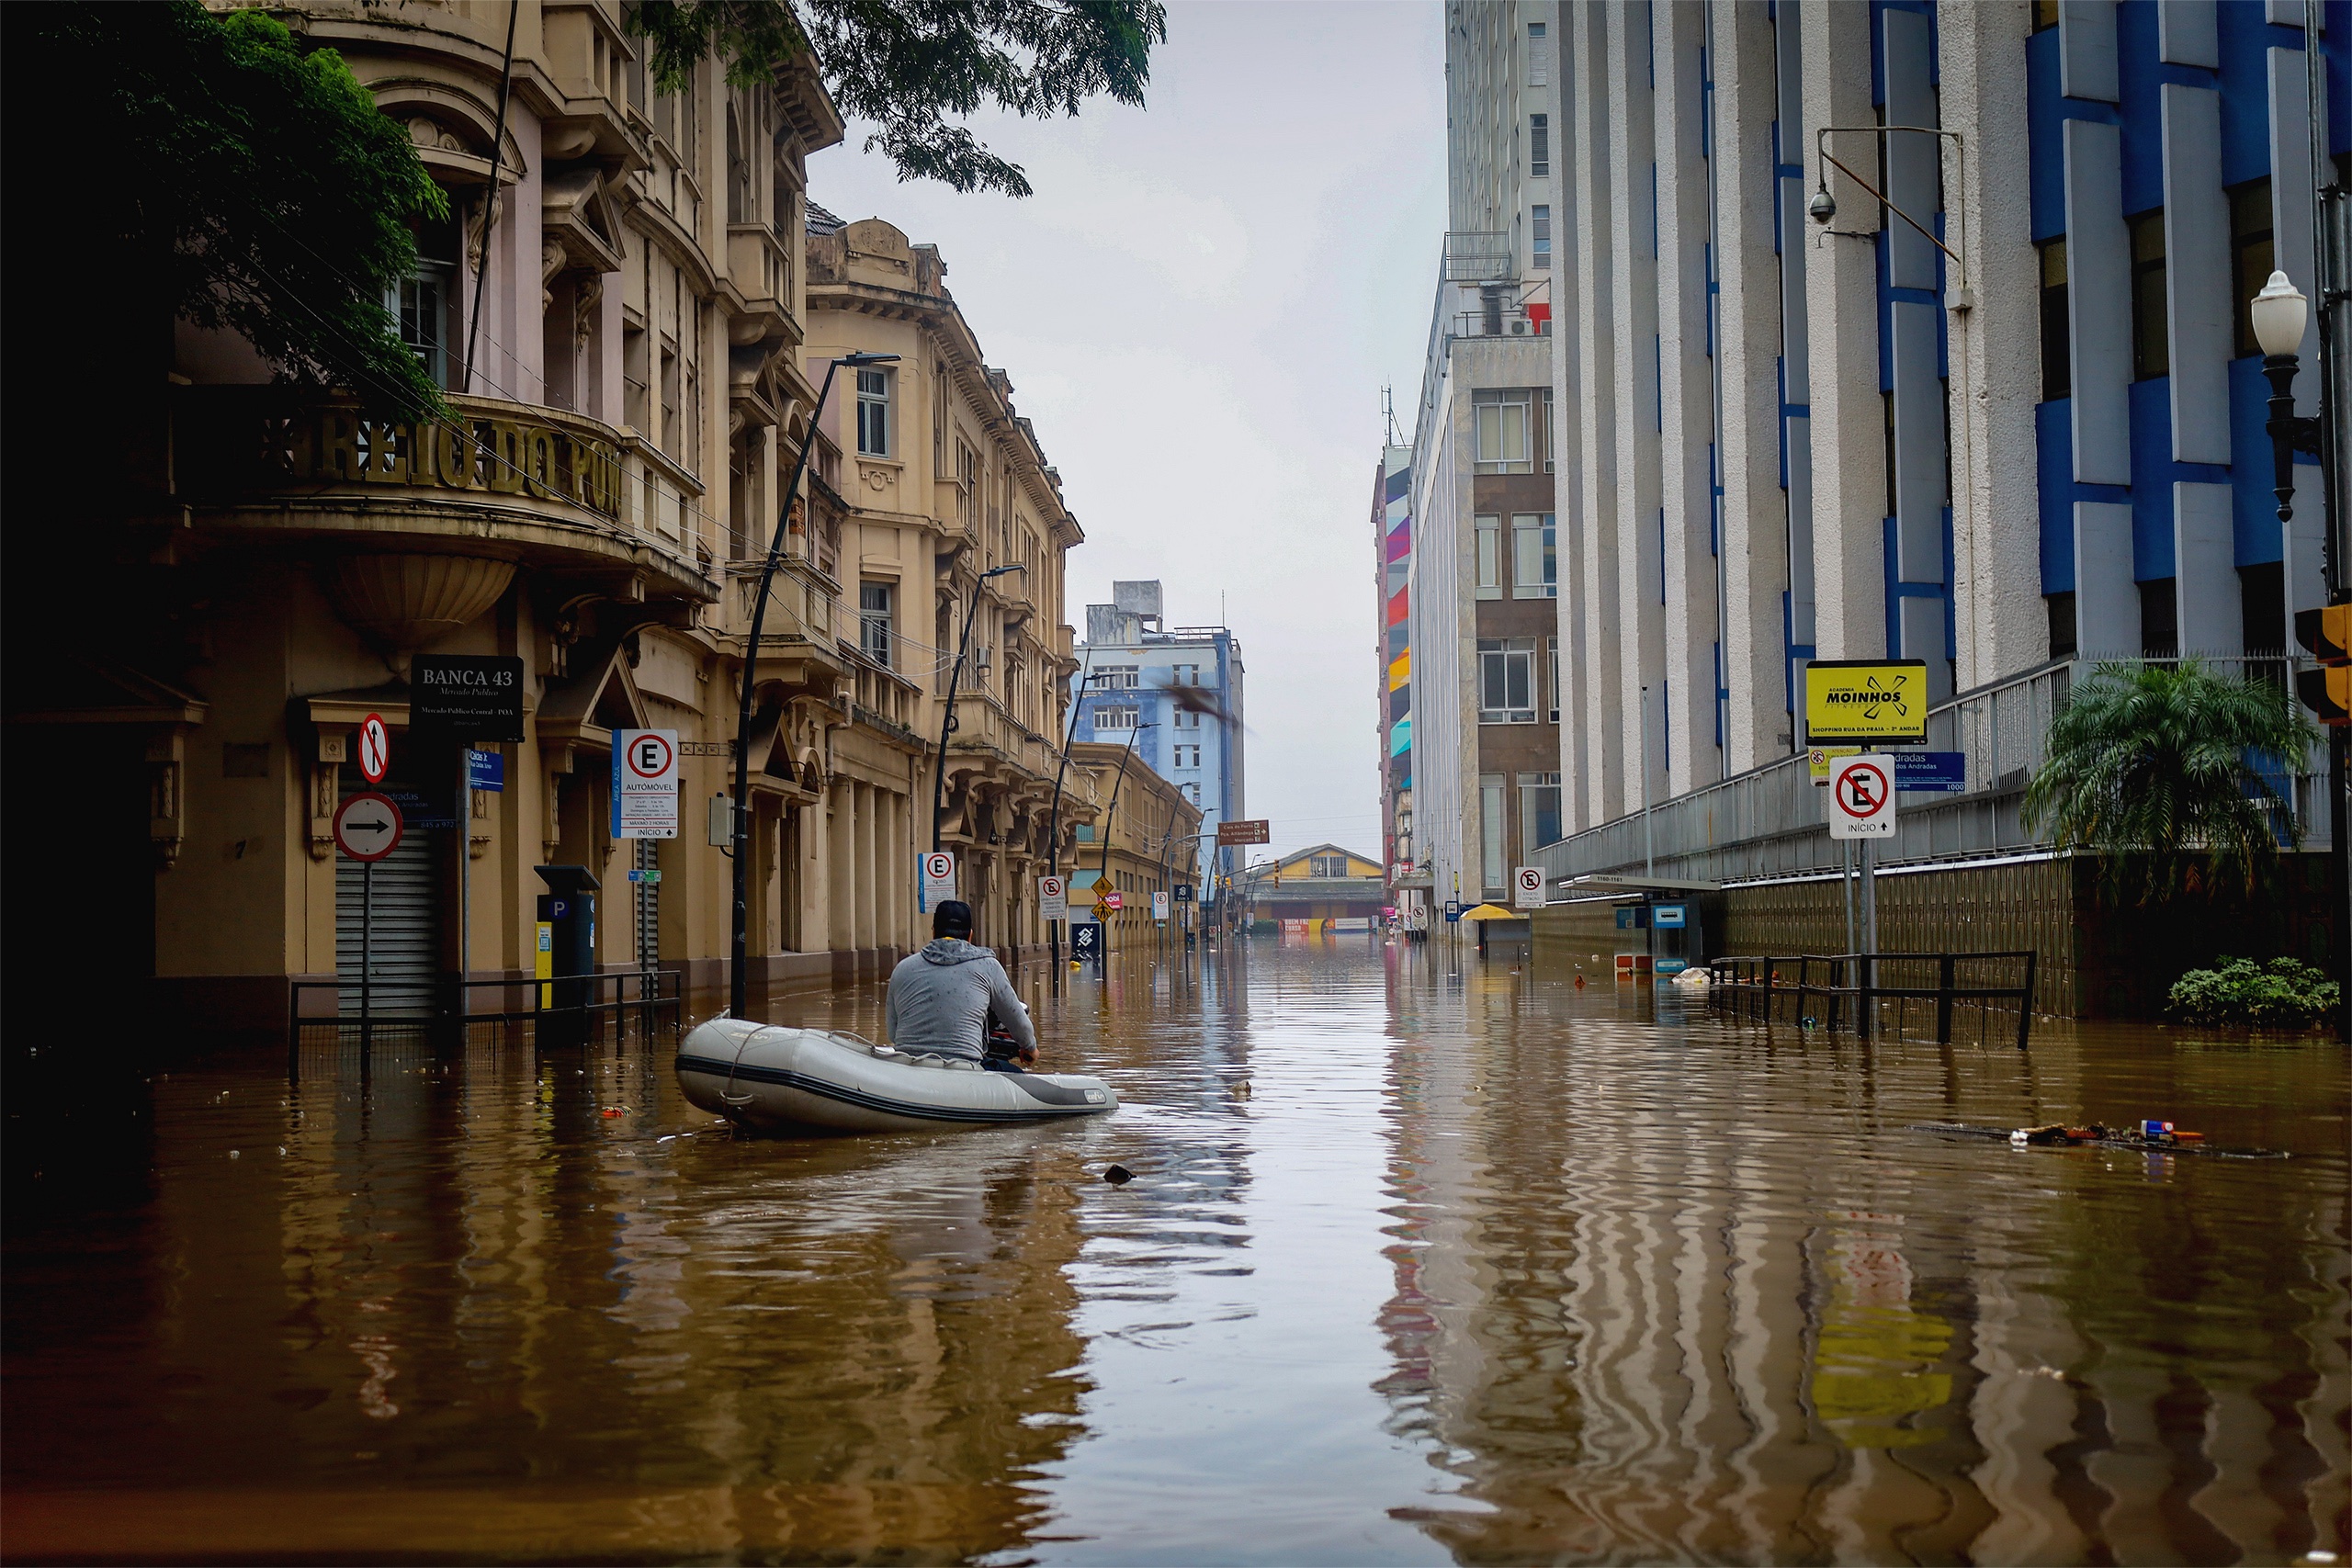 <p>Homem percorre ruas inundadas do Centro Histórico de Porto Alegre. A cidade sofreu a pior enchente de sua história, com a água chegando a mais de dois metros acima do nível do solo (Imagem: <a href="https://www.flickr.com/photos/midianinja/53727820655/in/album-72177720317043955/">Maí Yandara</a> / <a href="https://www.flickr.com/people/midianinja/">Mídia NINJA</a>, <a href="https://creativecommons.org/licenses/by-nc/2.0/">CC BY NC</a>)</p>